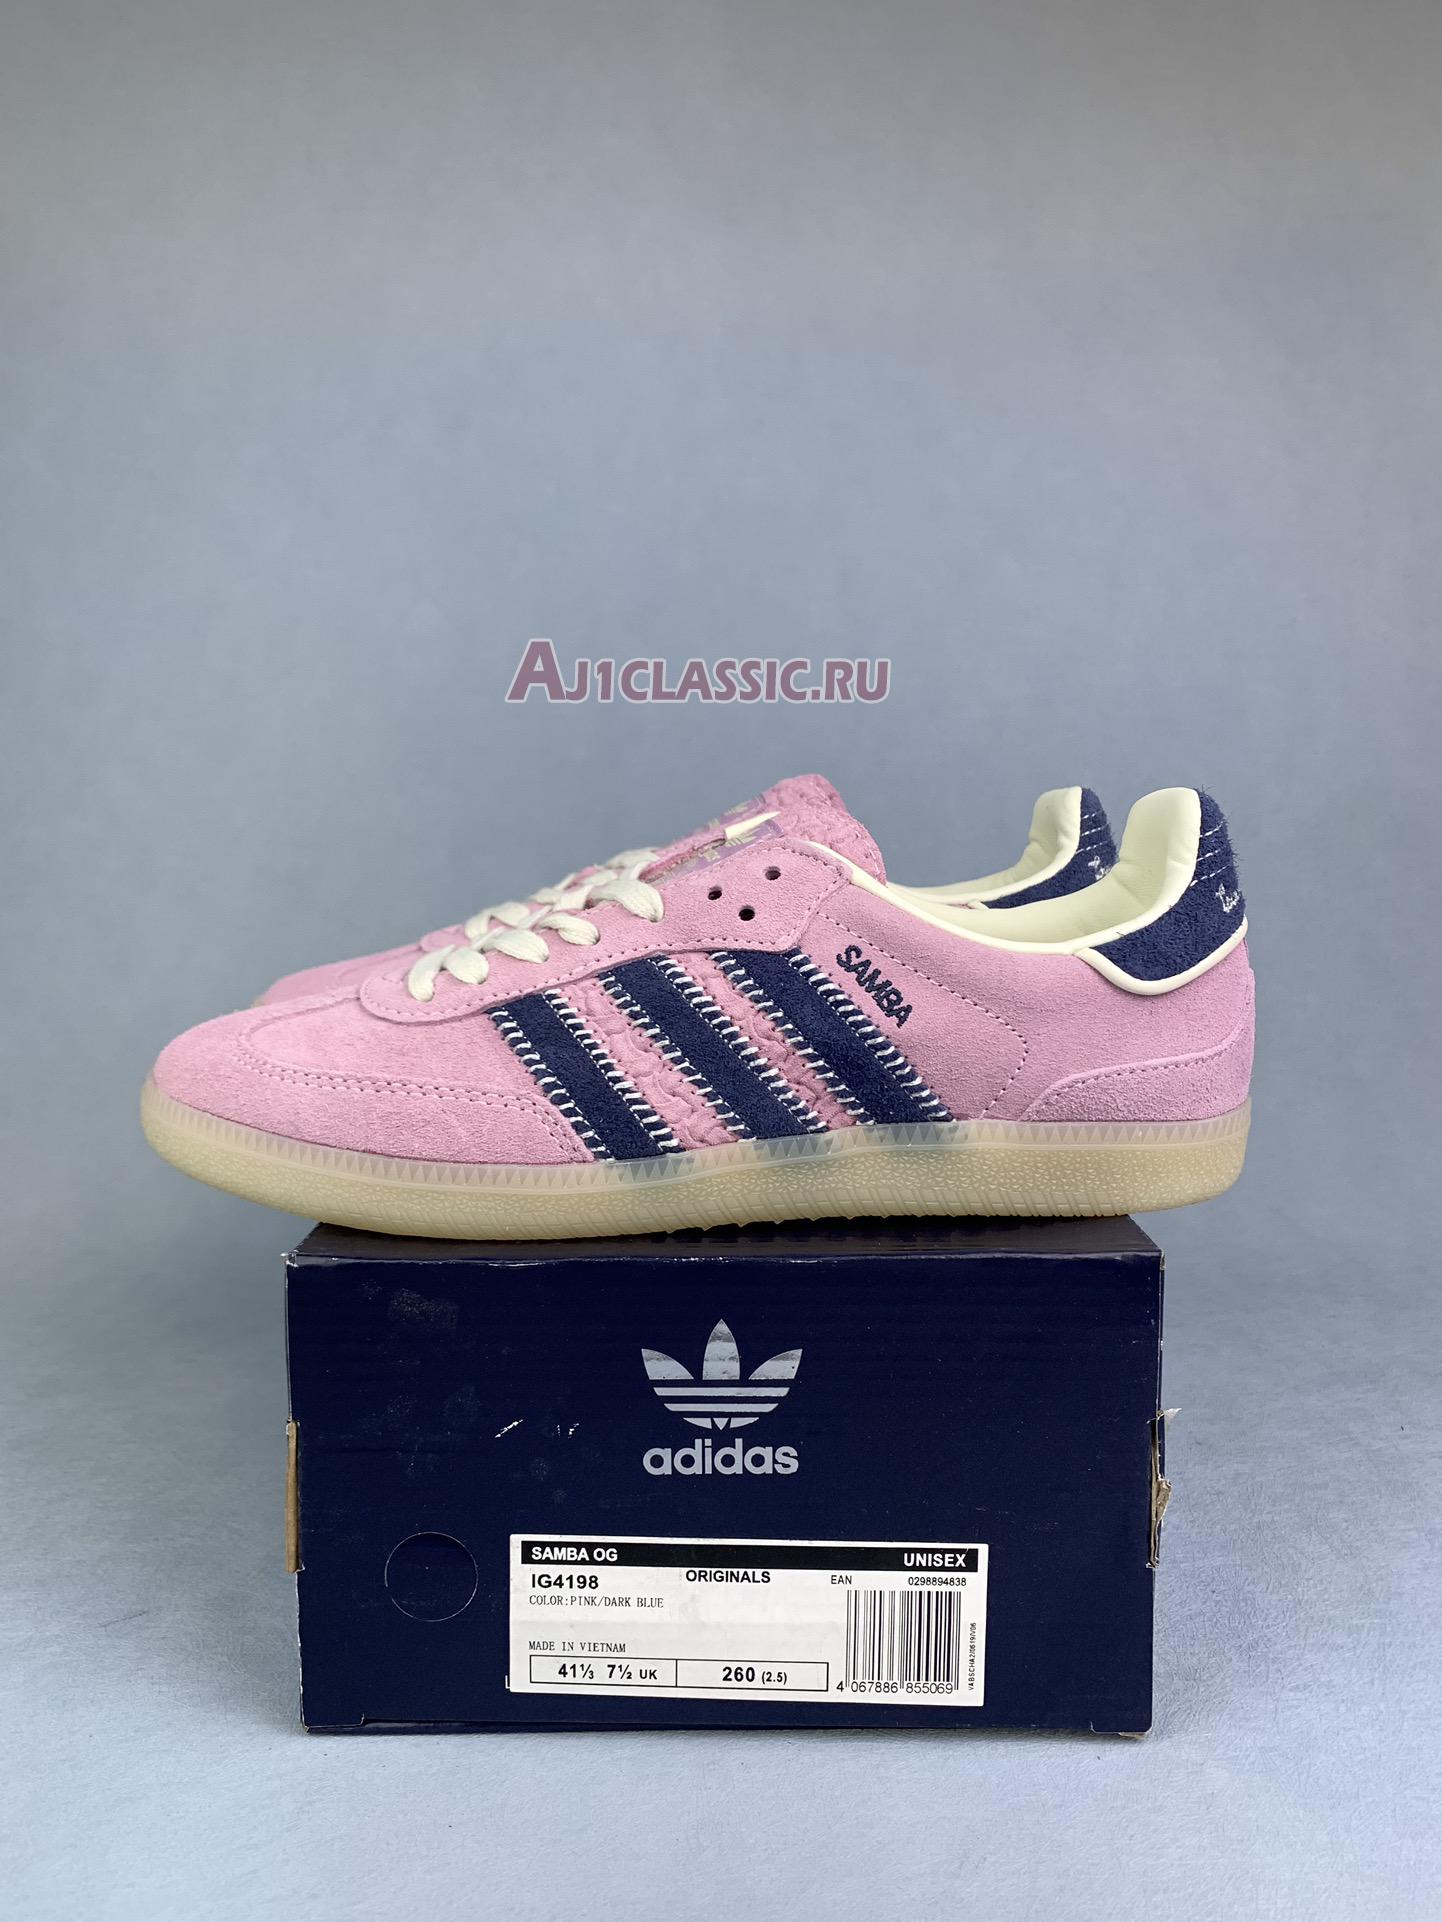 Adidas Samba OG "Notitle Pink" IG4198